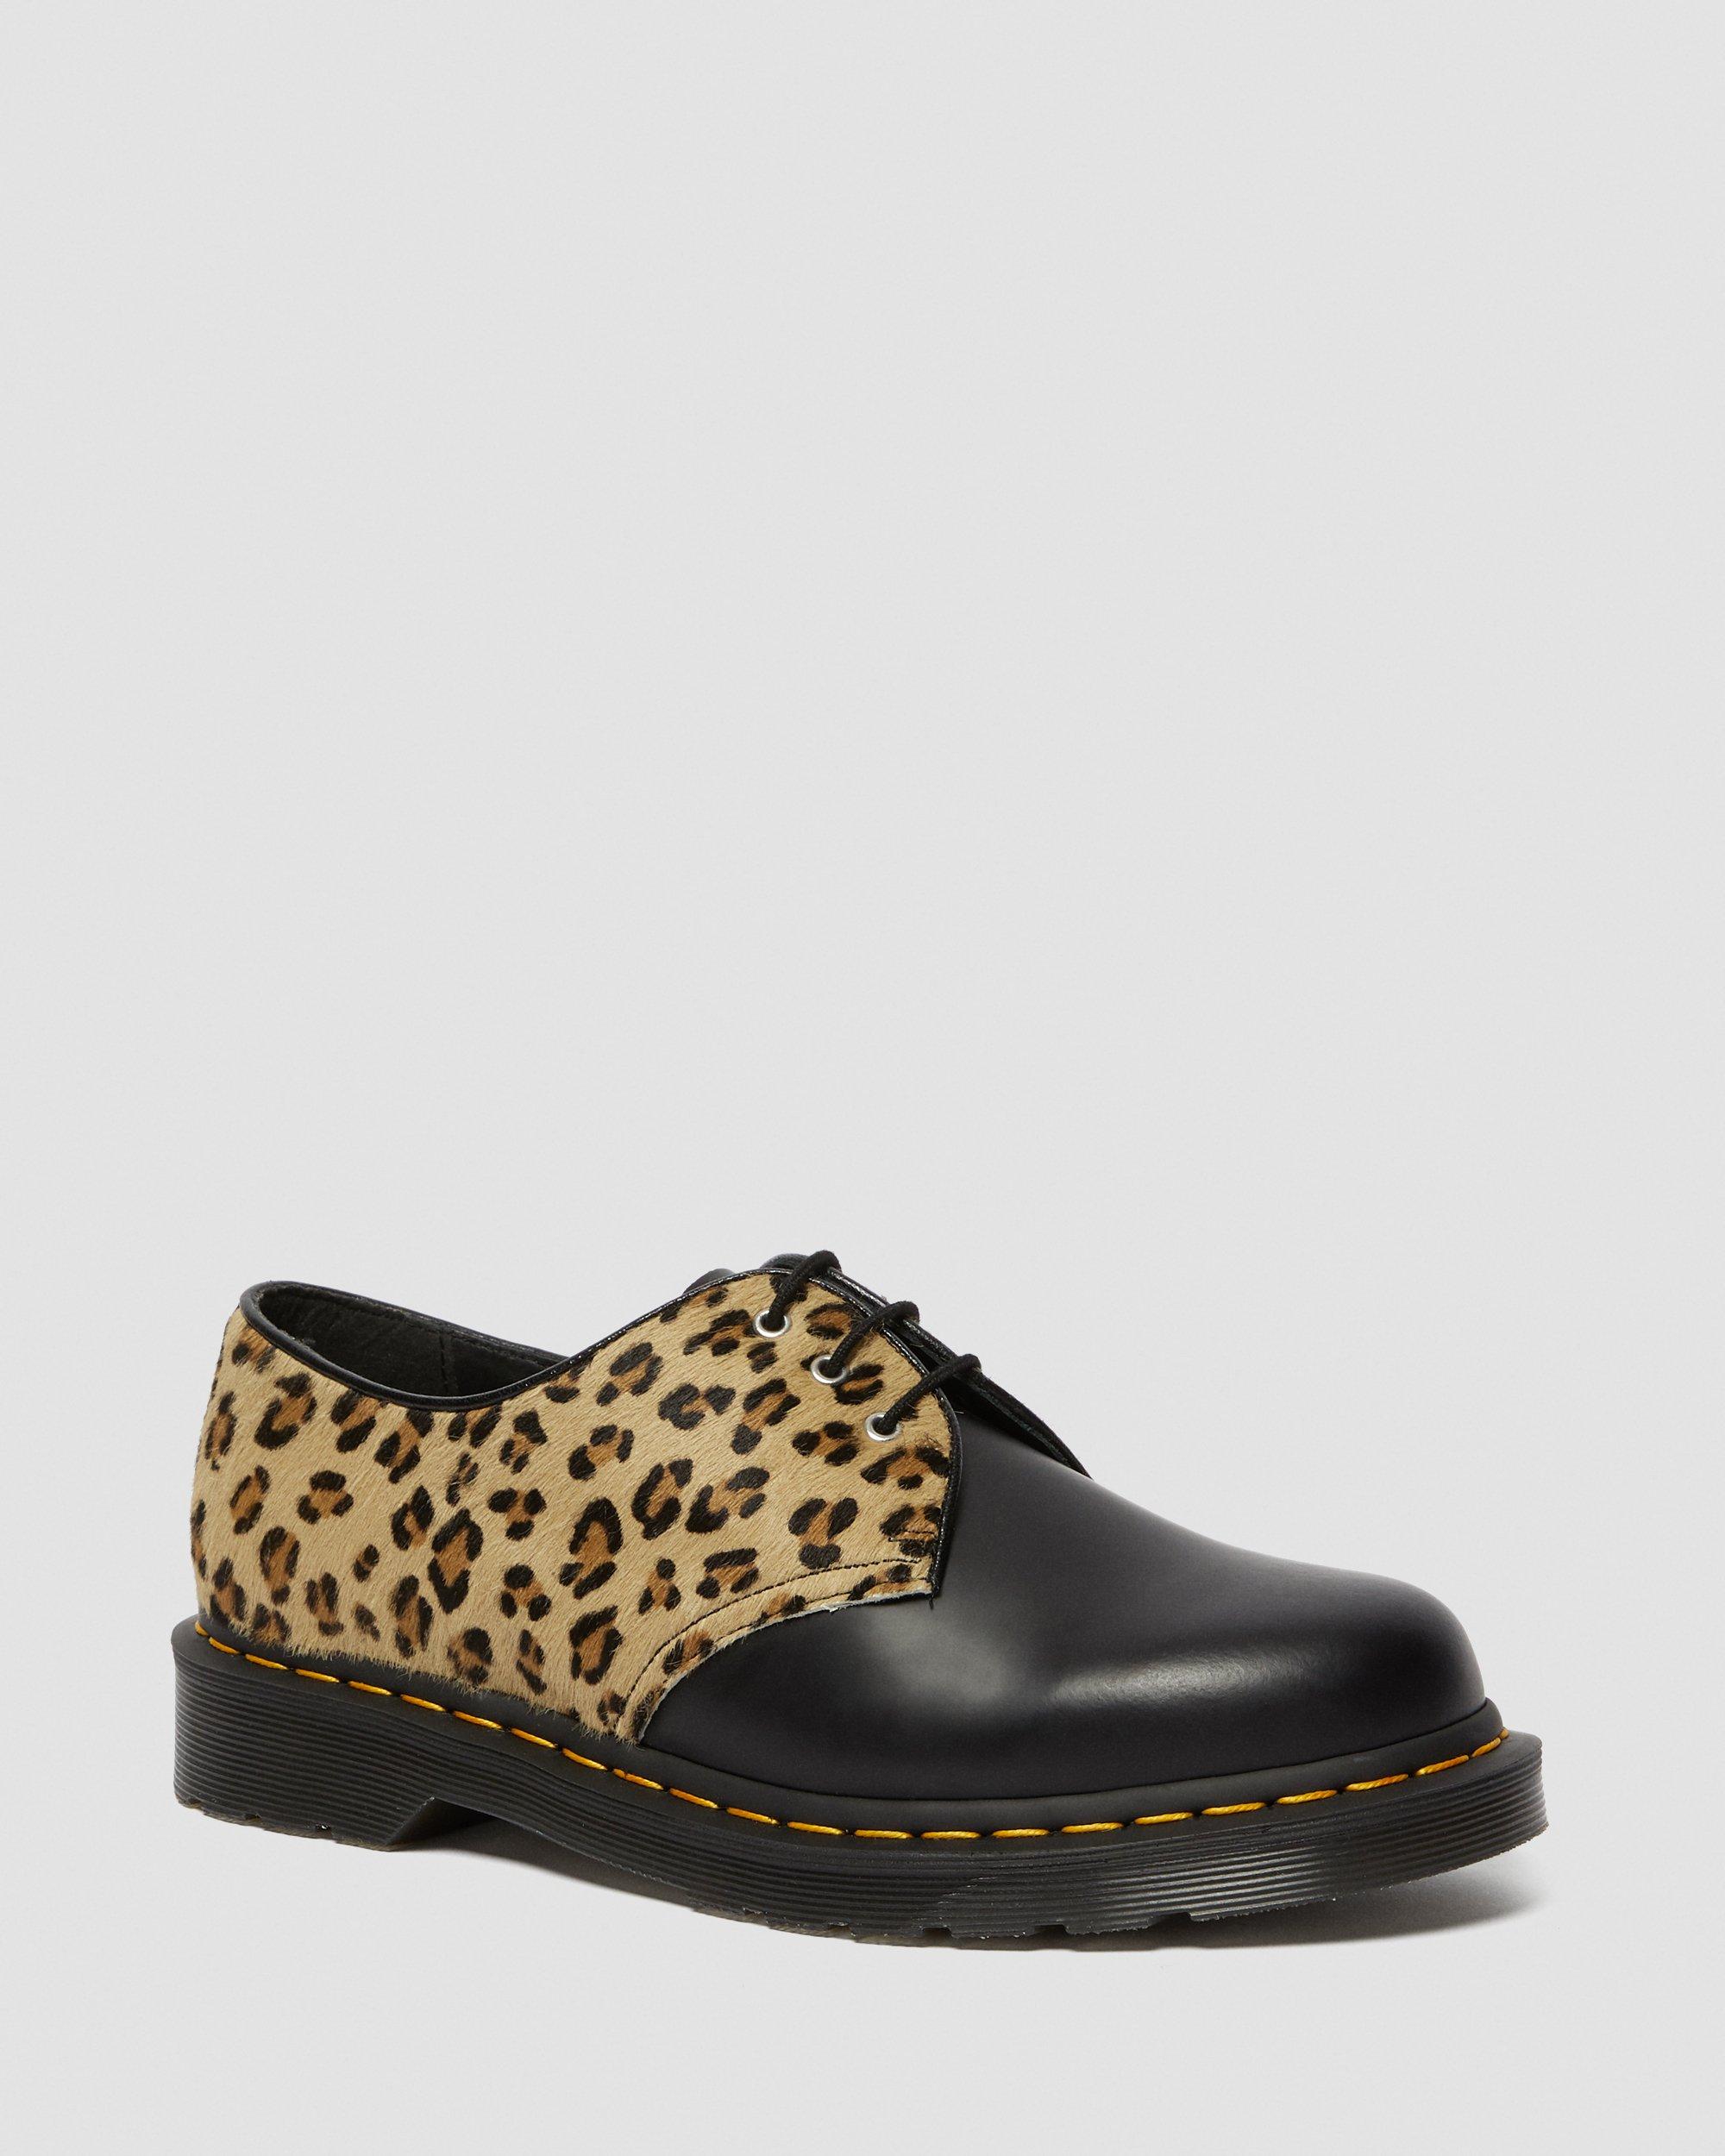 leopard shoes uk